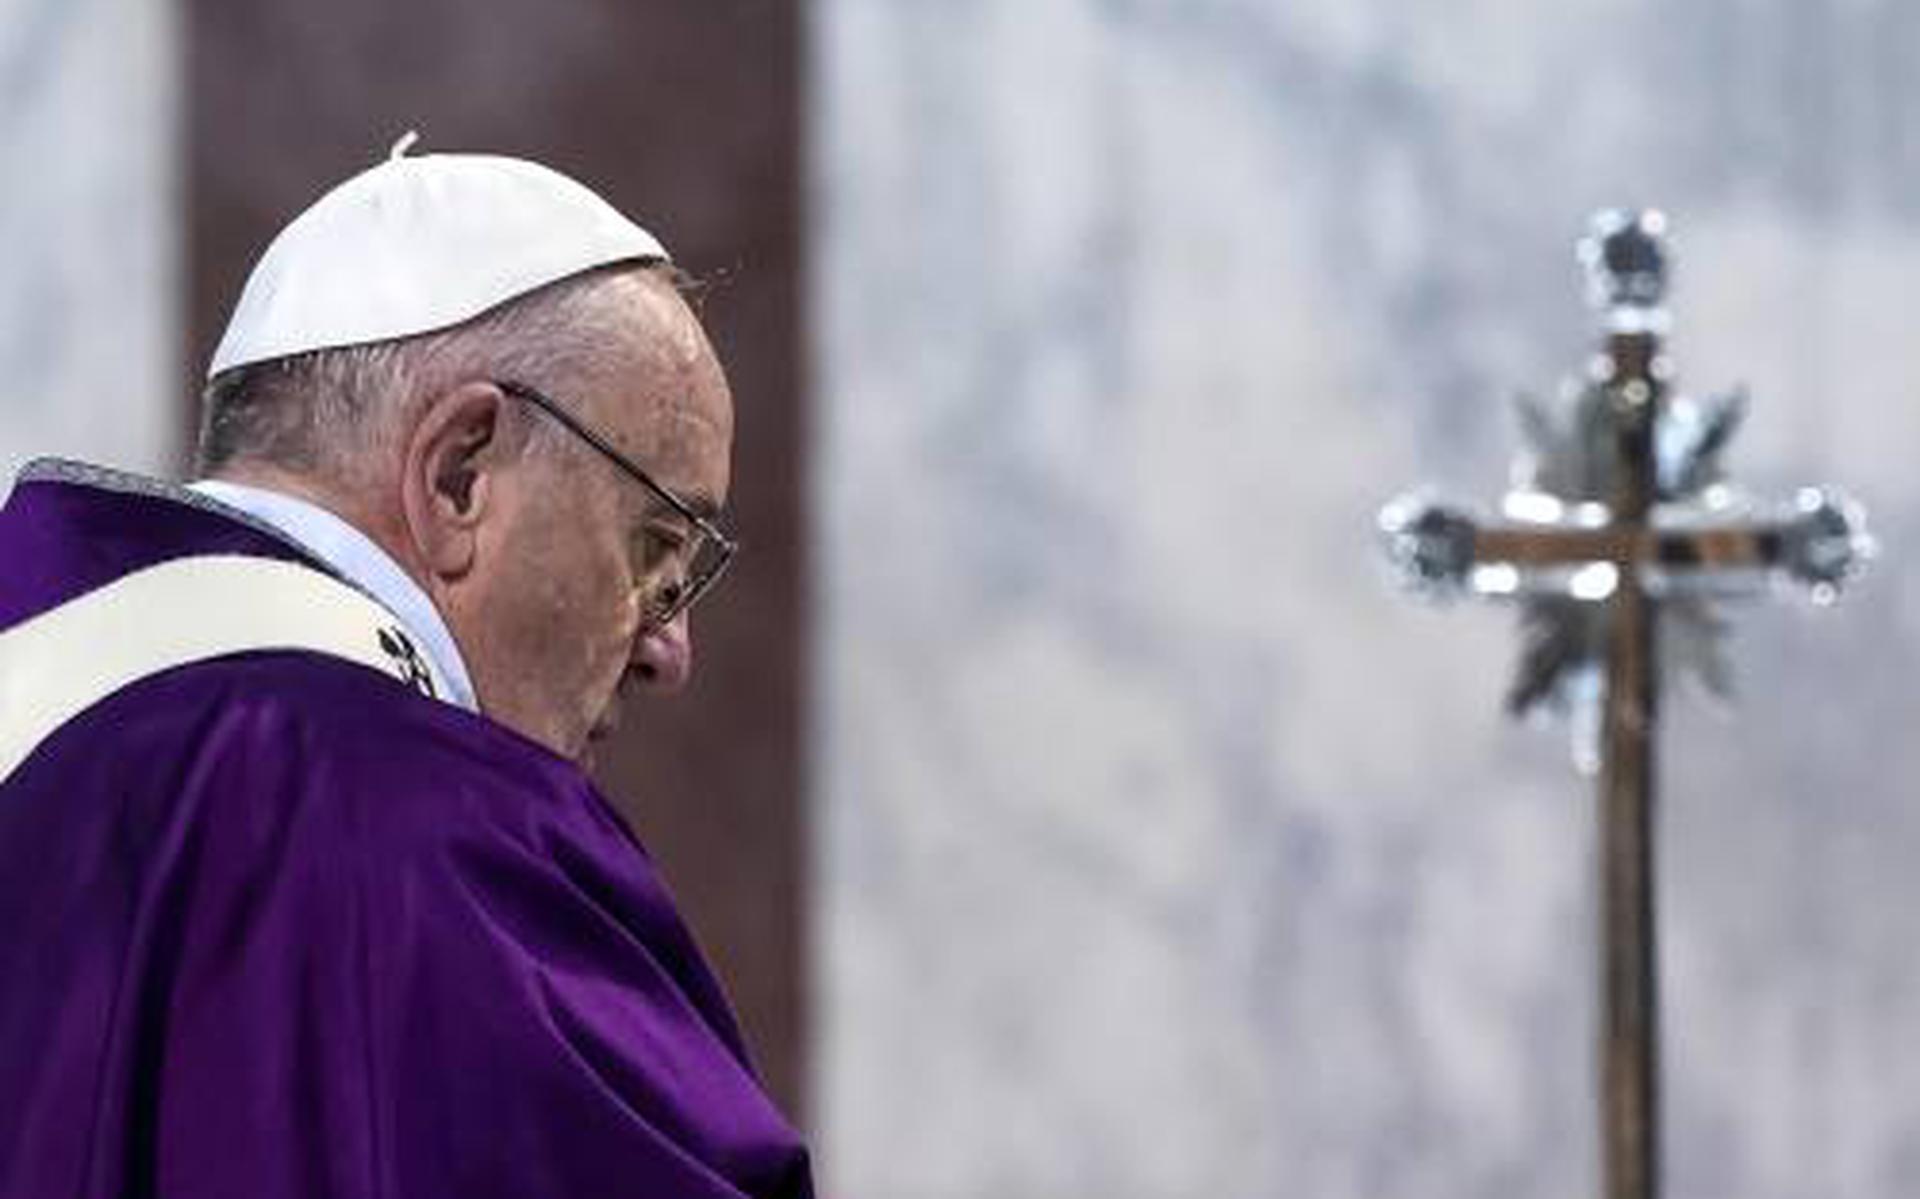 Gezant paus hoort verhaal slachtoffer misbruik